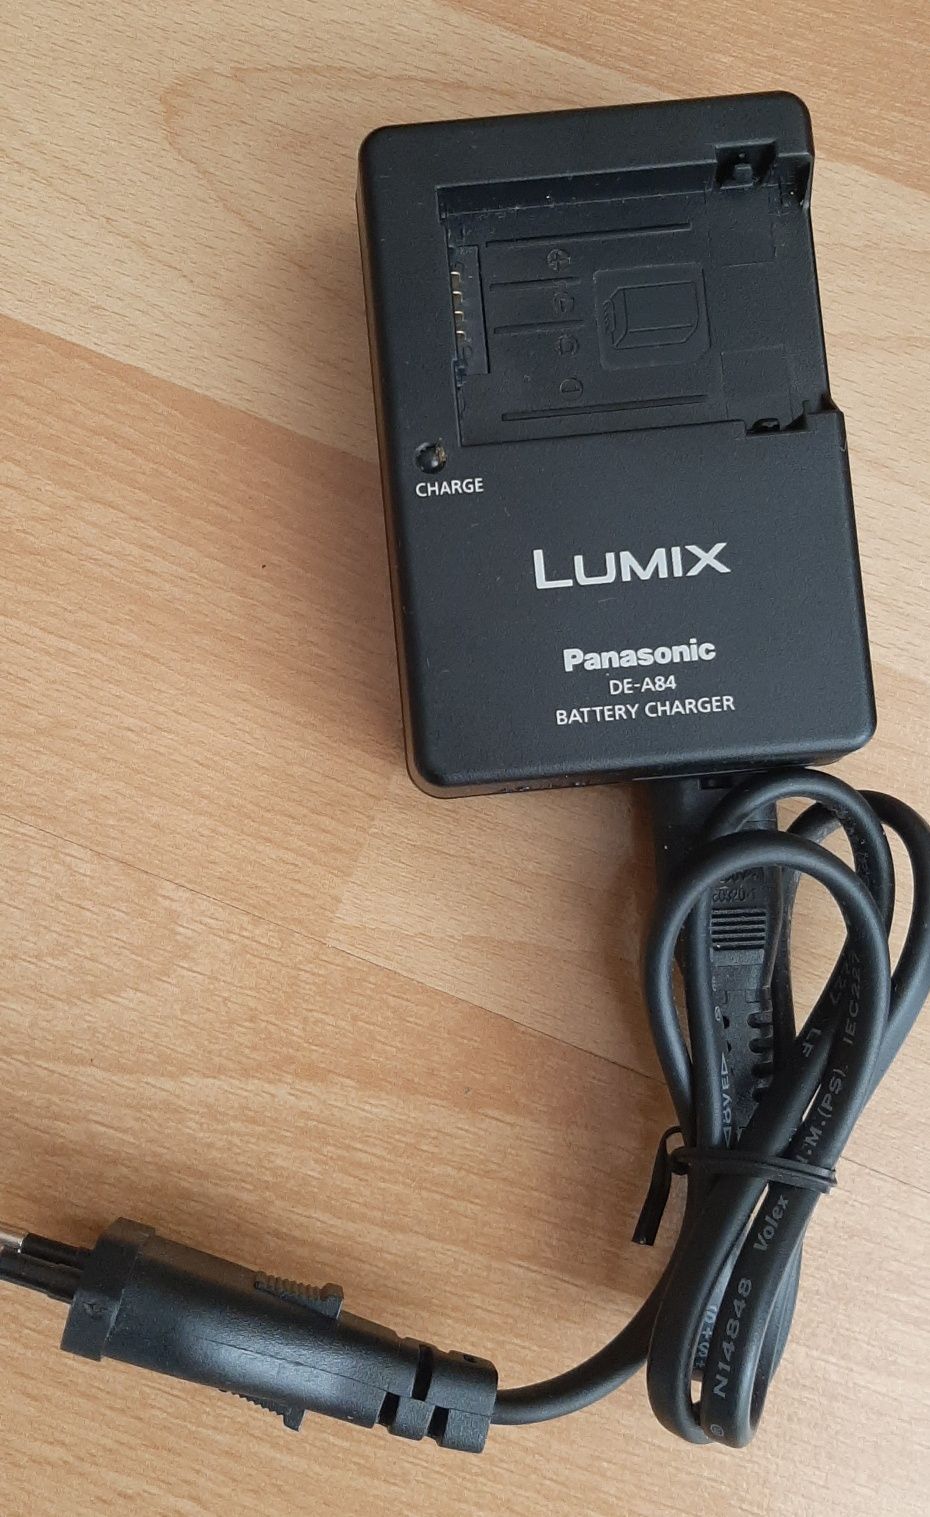 Aparat cyfrowy Panasonic Lumix DMC-FZ48 wraz z wyposażeniem